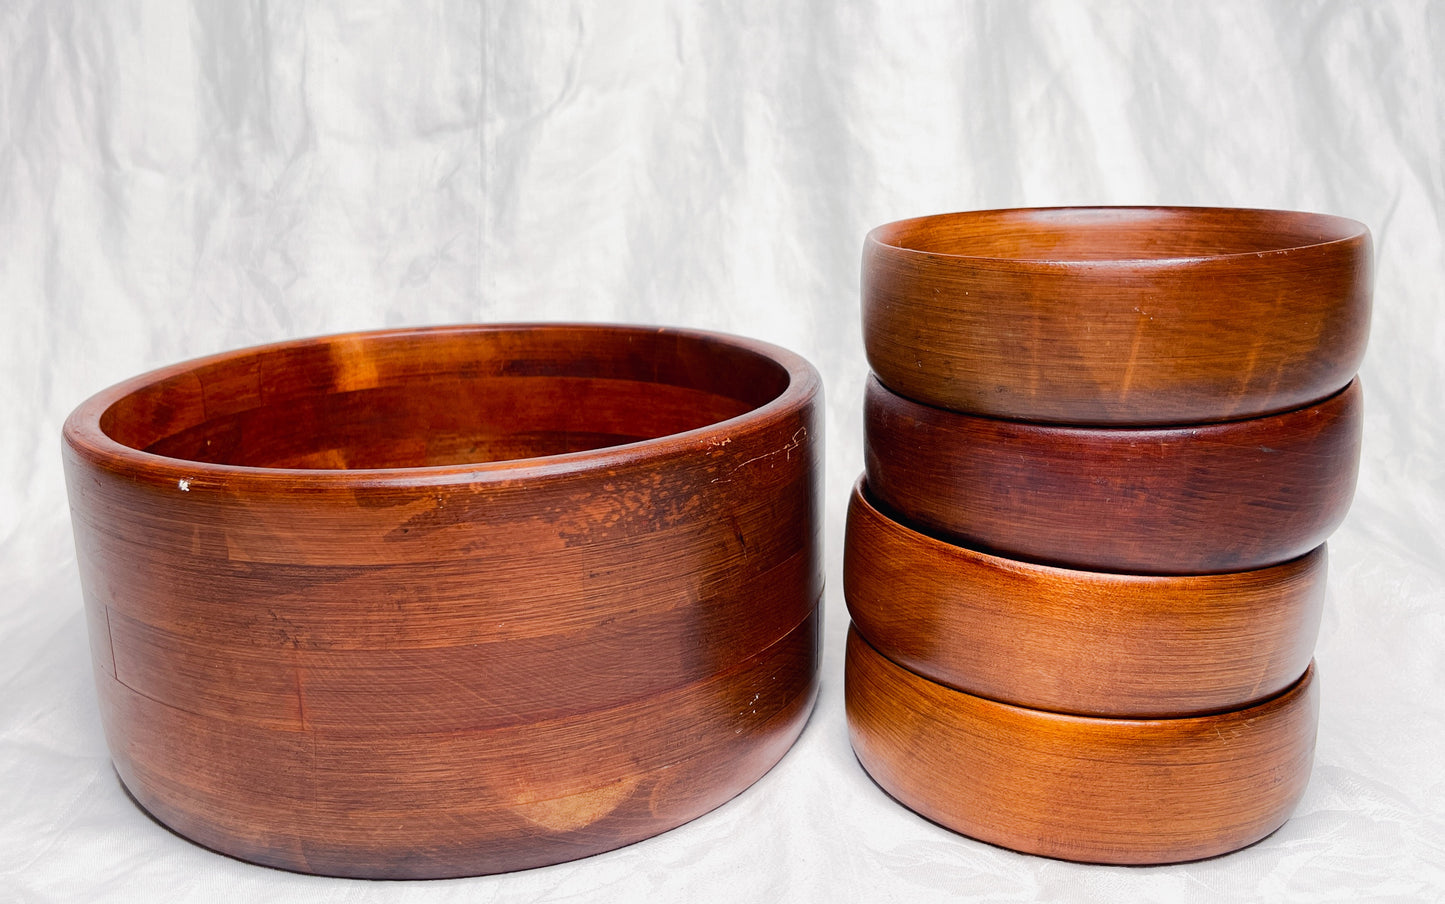 Vintage Handcrafted Bariboocraft Wooden Bowl Salad Set.